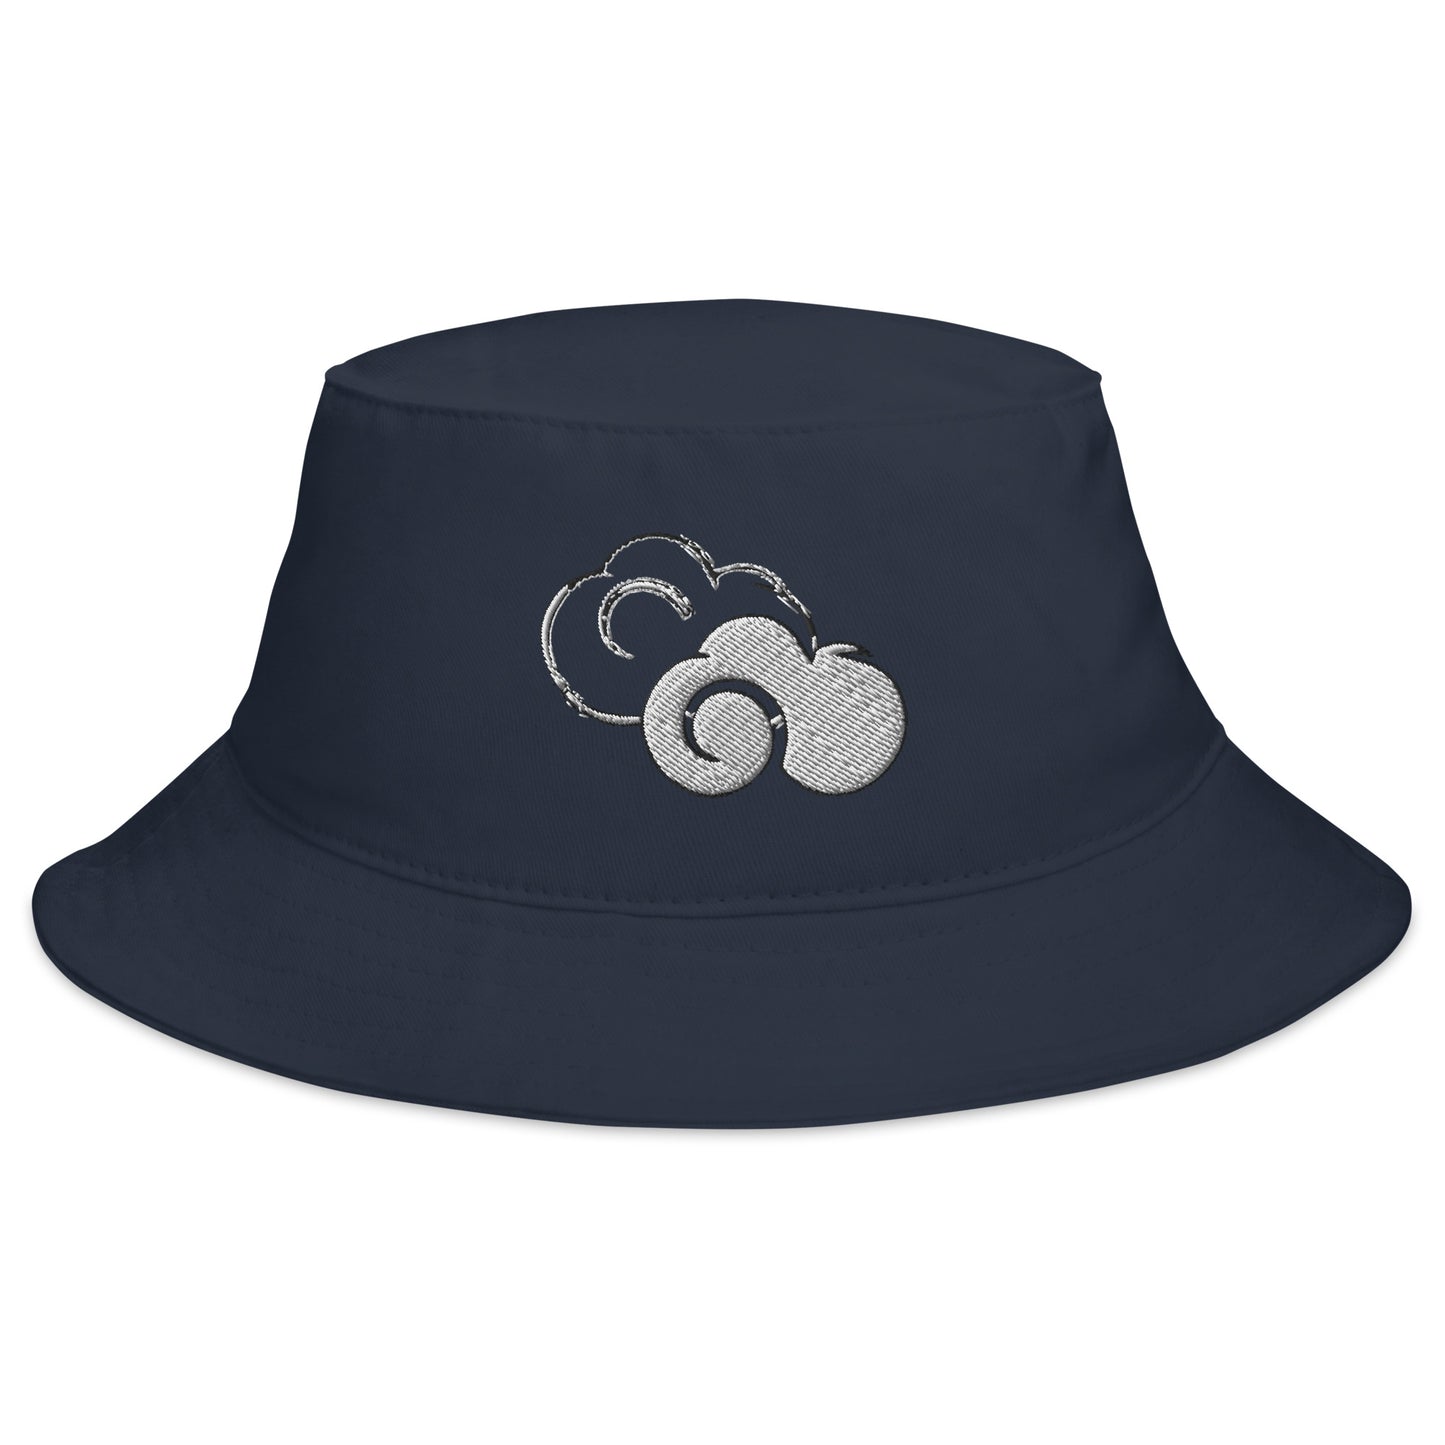 Our Zen Clouds Bucket Hat